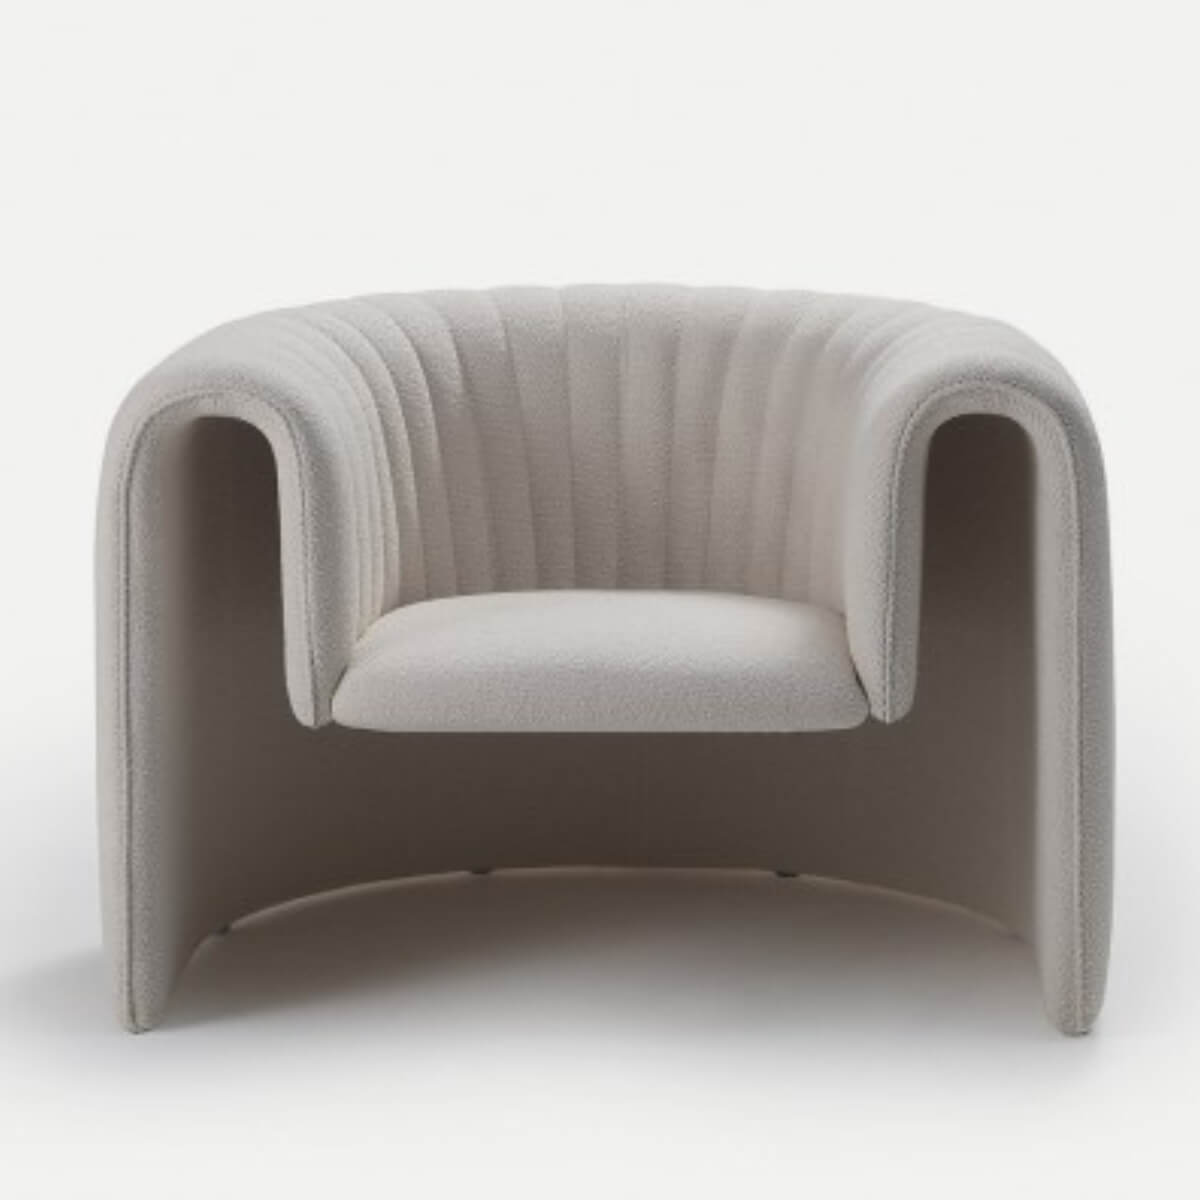 Designer-armchair-in-Australia-11